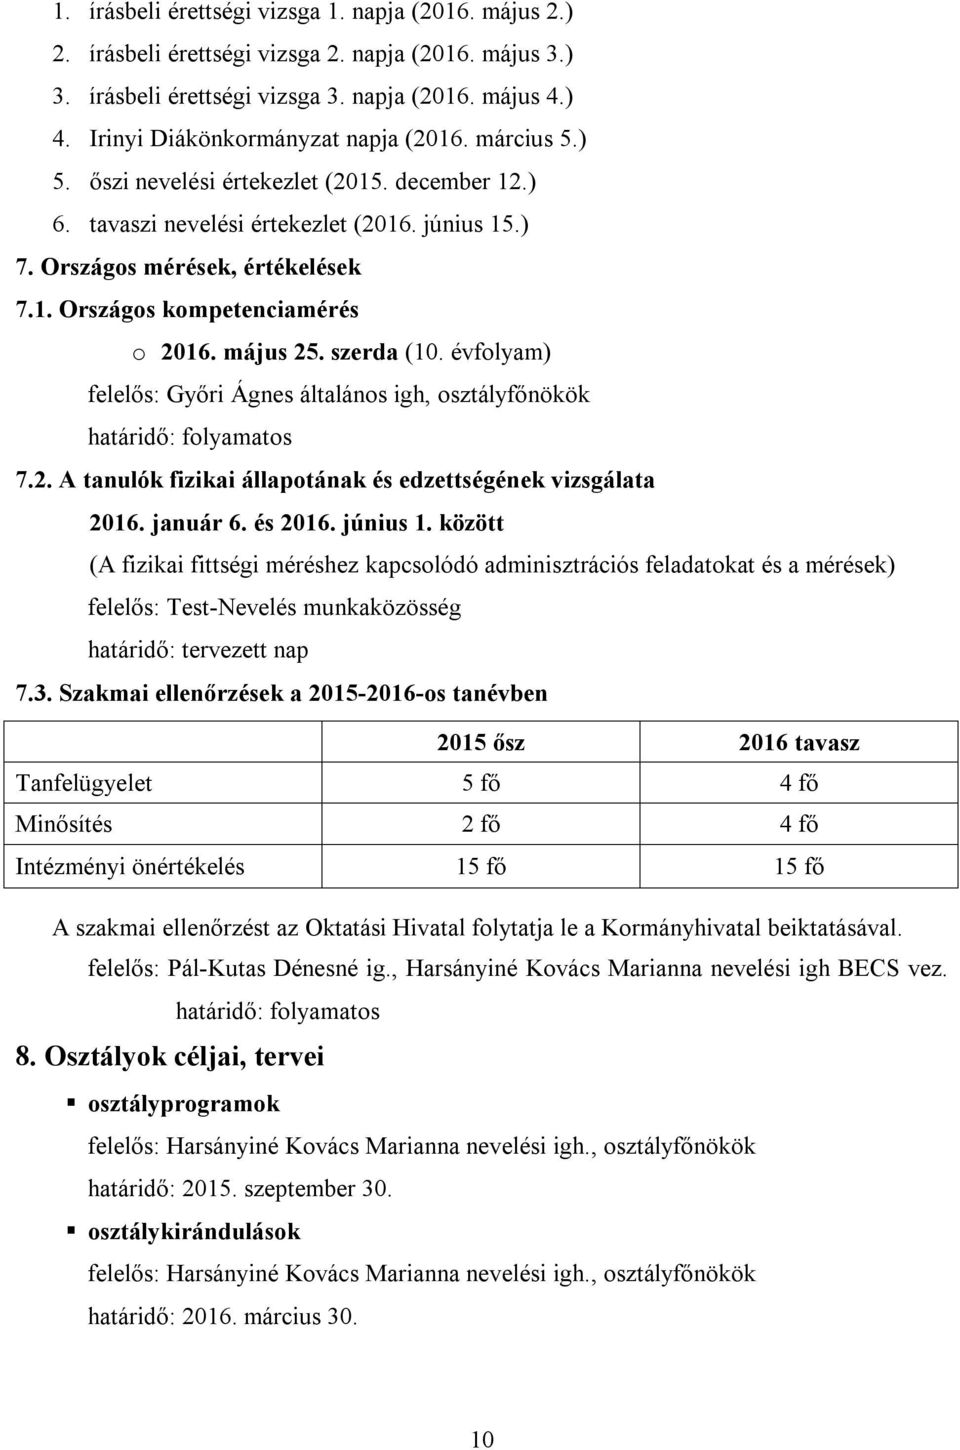 május 25. szerda (10. évfolyam) felelős: Győri Ágnes általános igh, osztályfőnökök 7.2. A tanulók fizikai állapotának és edzettségének vizsgálata 2016. január 6. és 2016. június 1.